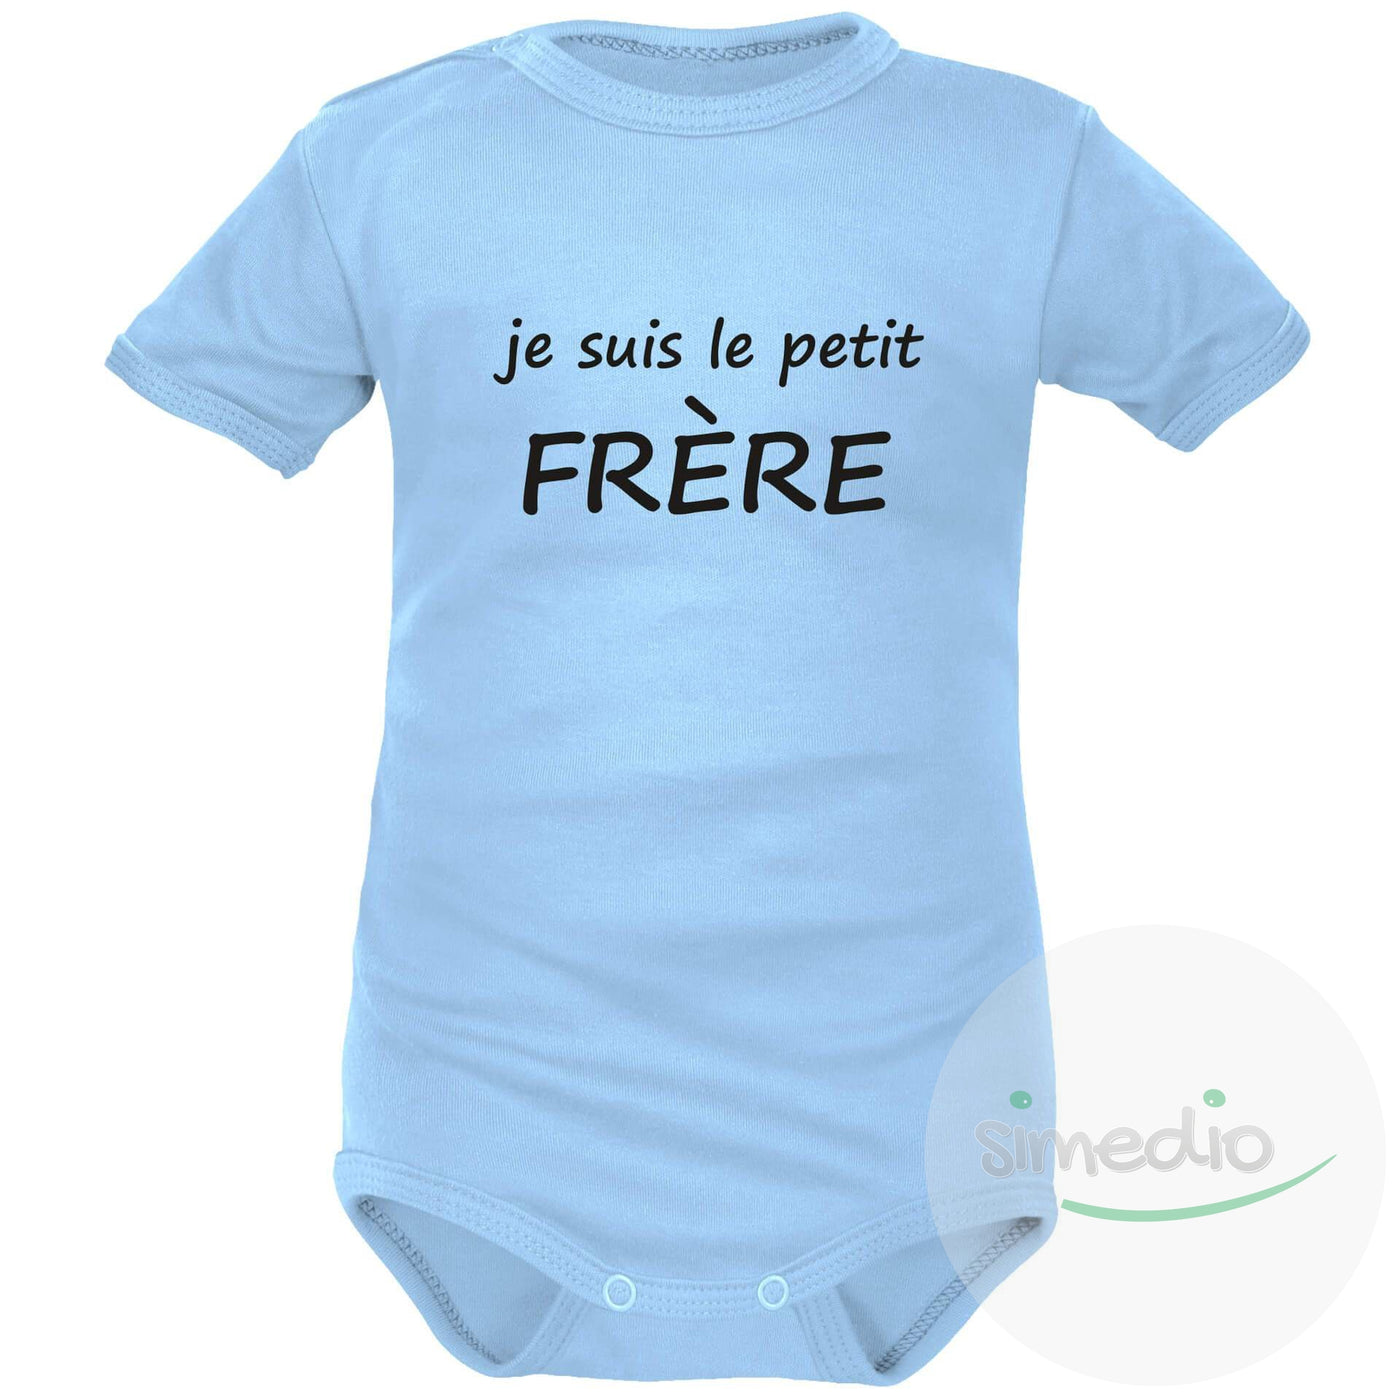 Body bébé avec texte sympa : je suis le petit FRÈRE, Bleu, Courtes, 0-1 mois - SiMEDIO